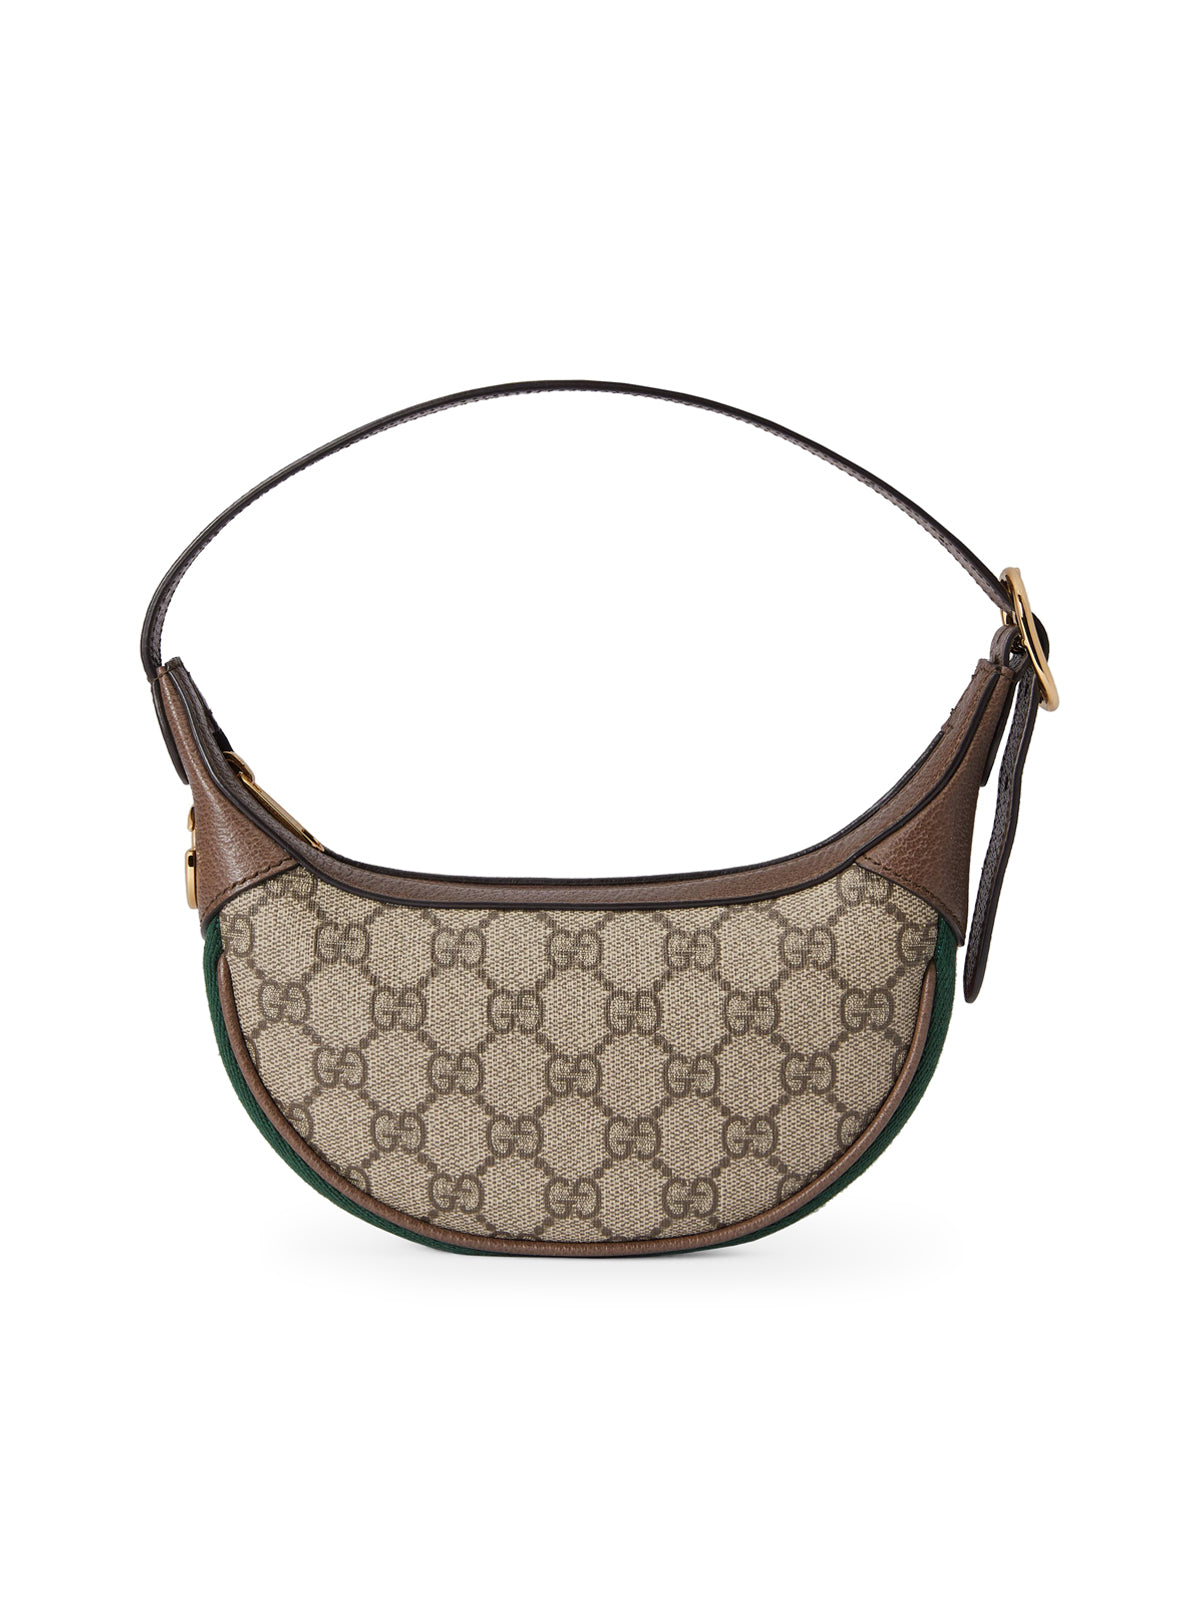 Buy Gucci Ophidia GG Mini Bag 'Beige/Ebony/White' - 658551 96IWG 9794